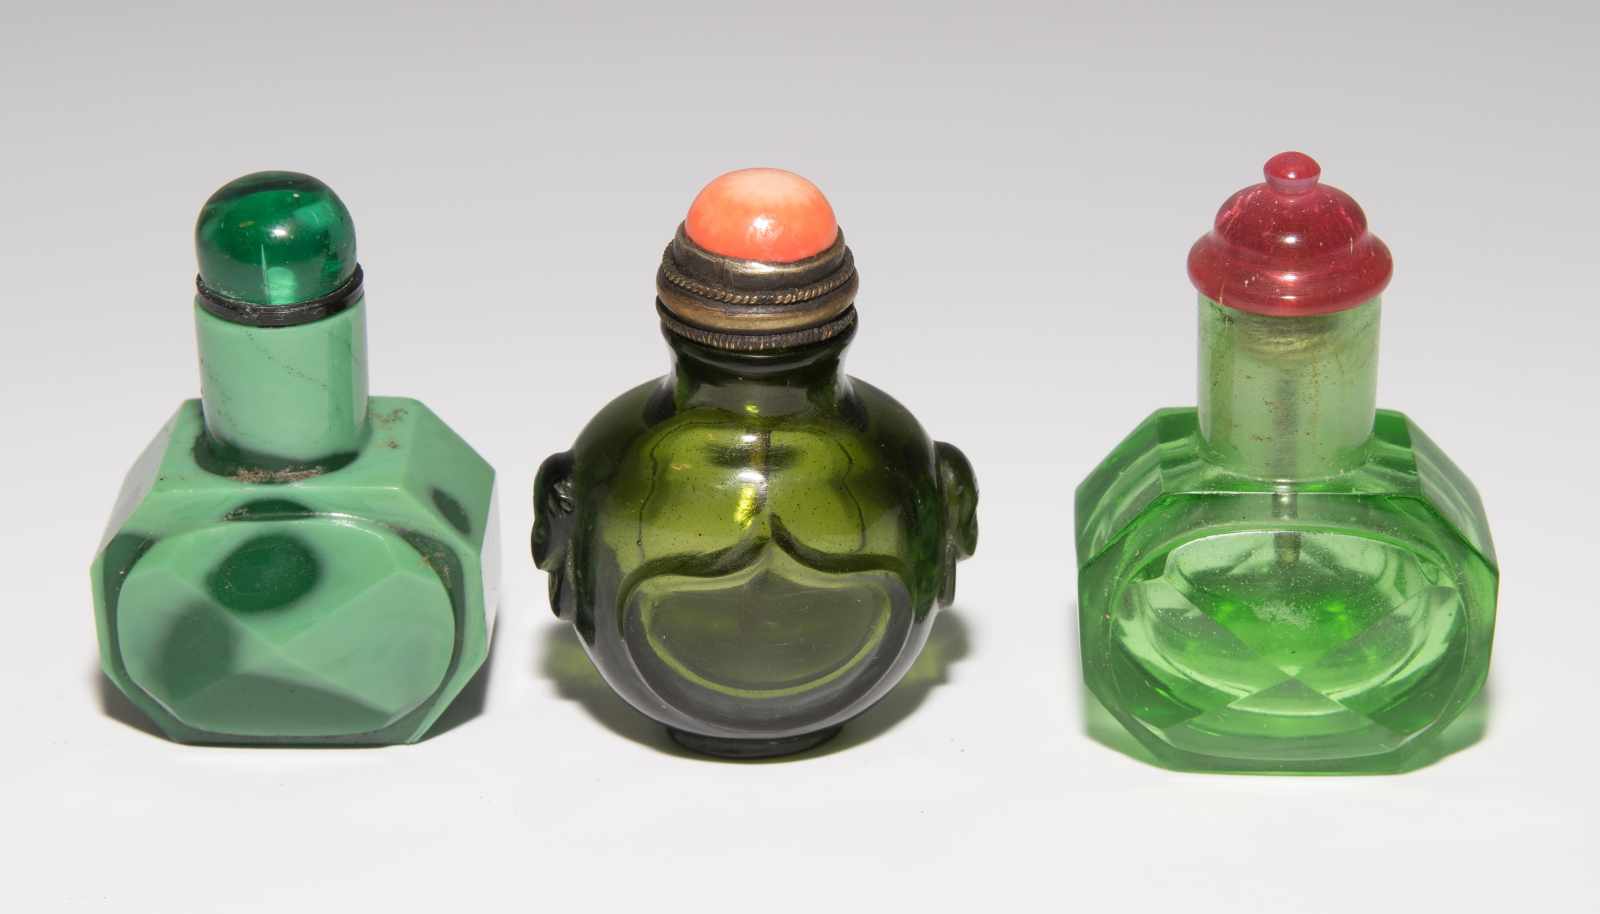 8 Snuff BottlesChina. Drei kleine Snuff Bottles aus transparentem Glas in verschiedenen Grüntonen; - Image 16 of 22